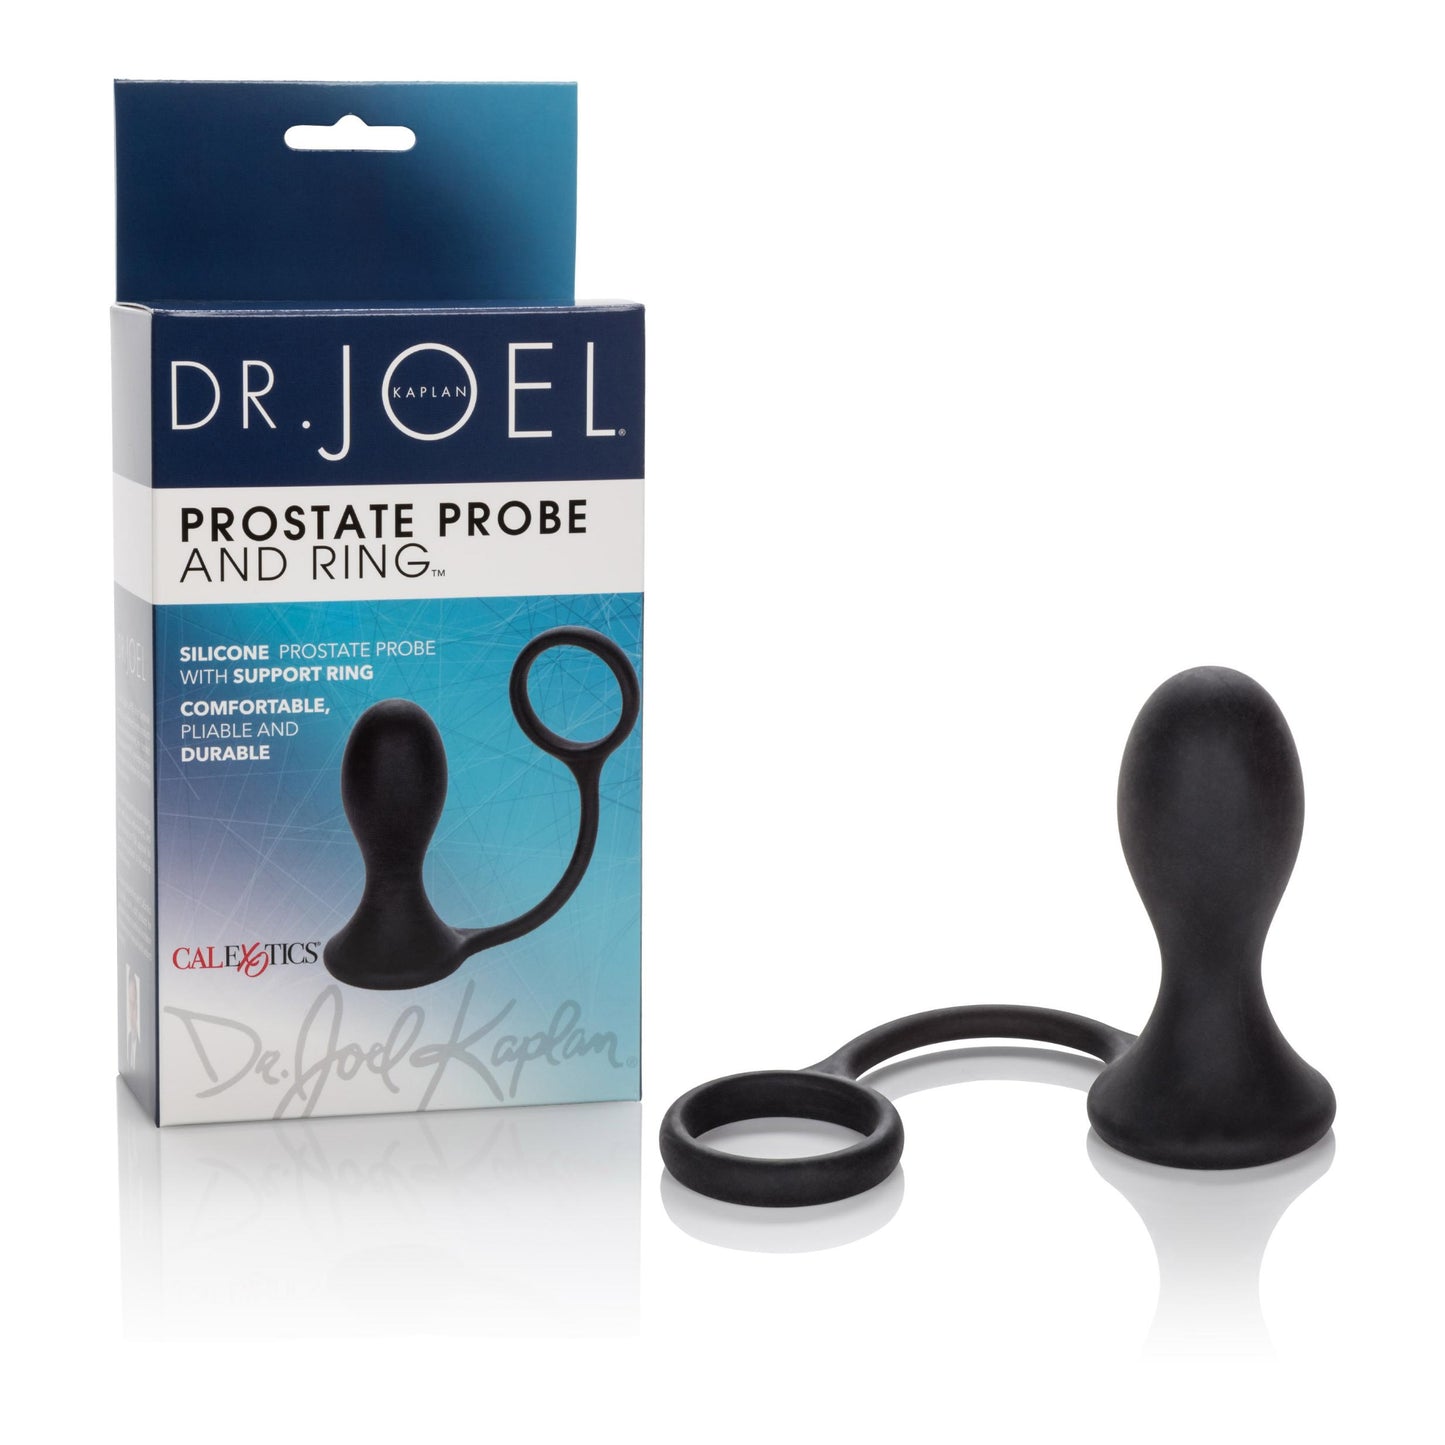 Dr. Joel Kaplan Prostate Probe and Ring - Black